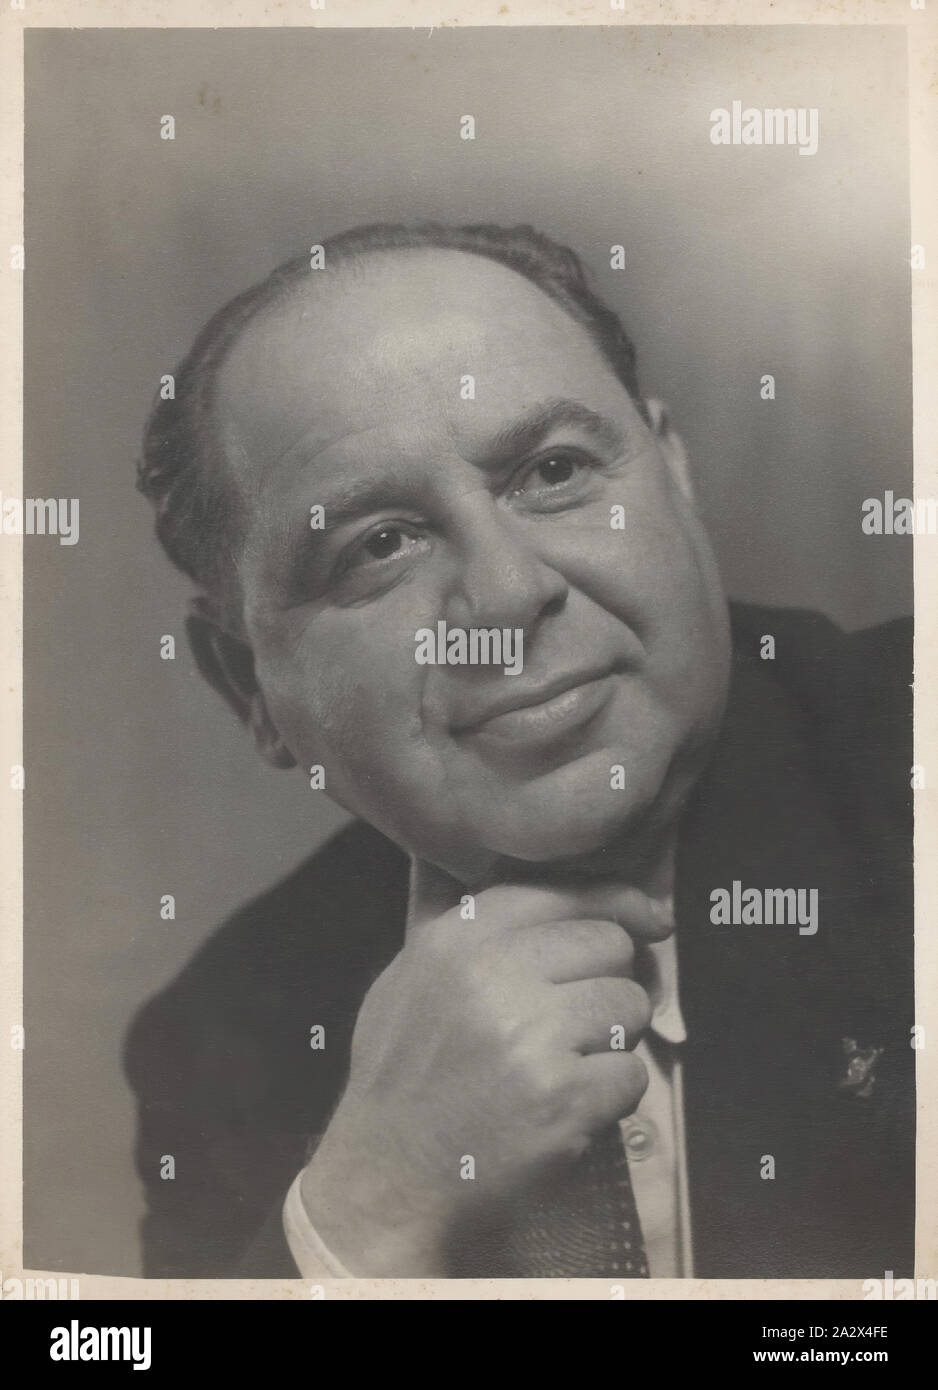 Photograph - Portrait of Leo Sterne, Victoria, circa 1939-1965, Black and white photograph of Leo Sterne posing for a portrait, Victoria, Australia, circa 1939 - 1965 Stock Photo